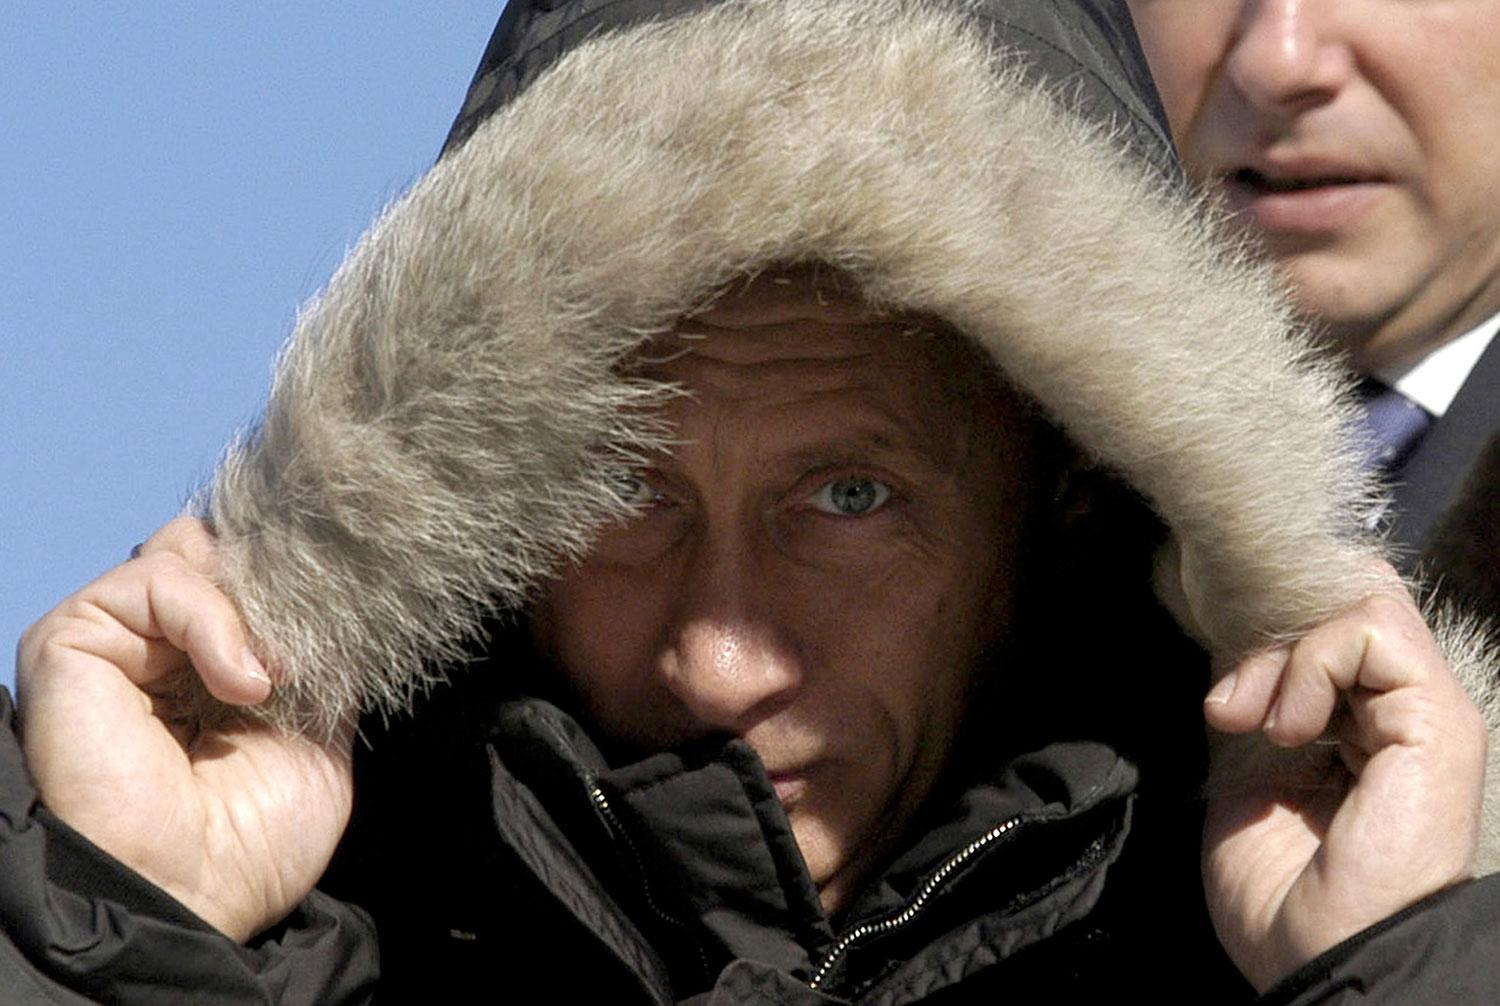 Vintertid får de ryska soldaterna räkna med temperaturer på cirka 50 minusgrader.